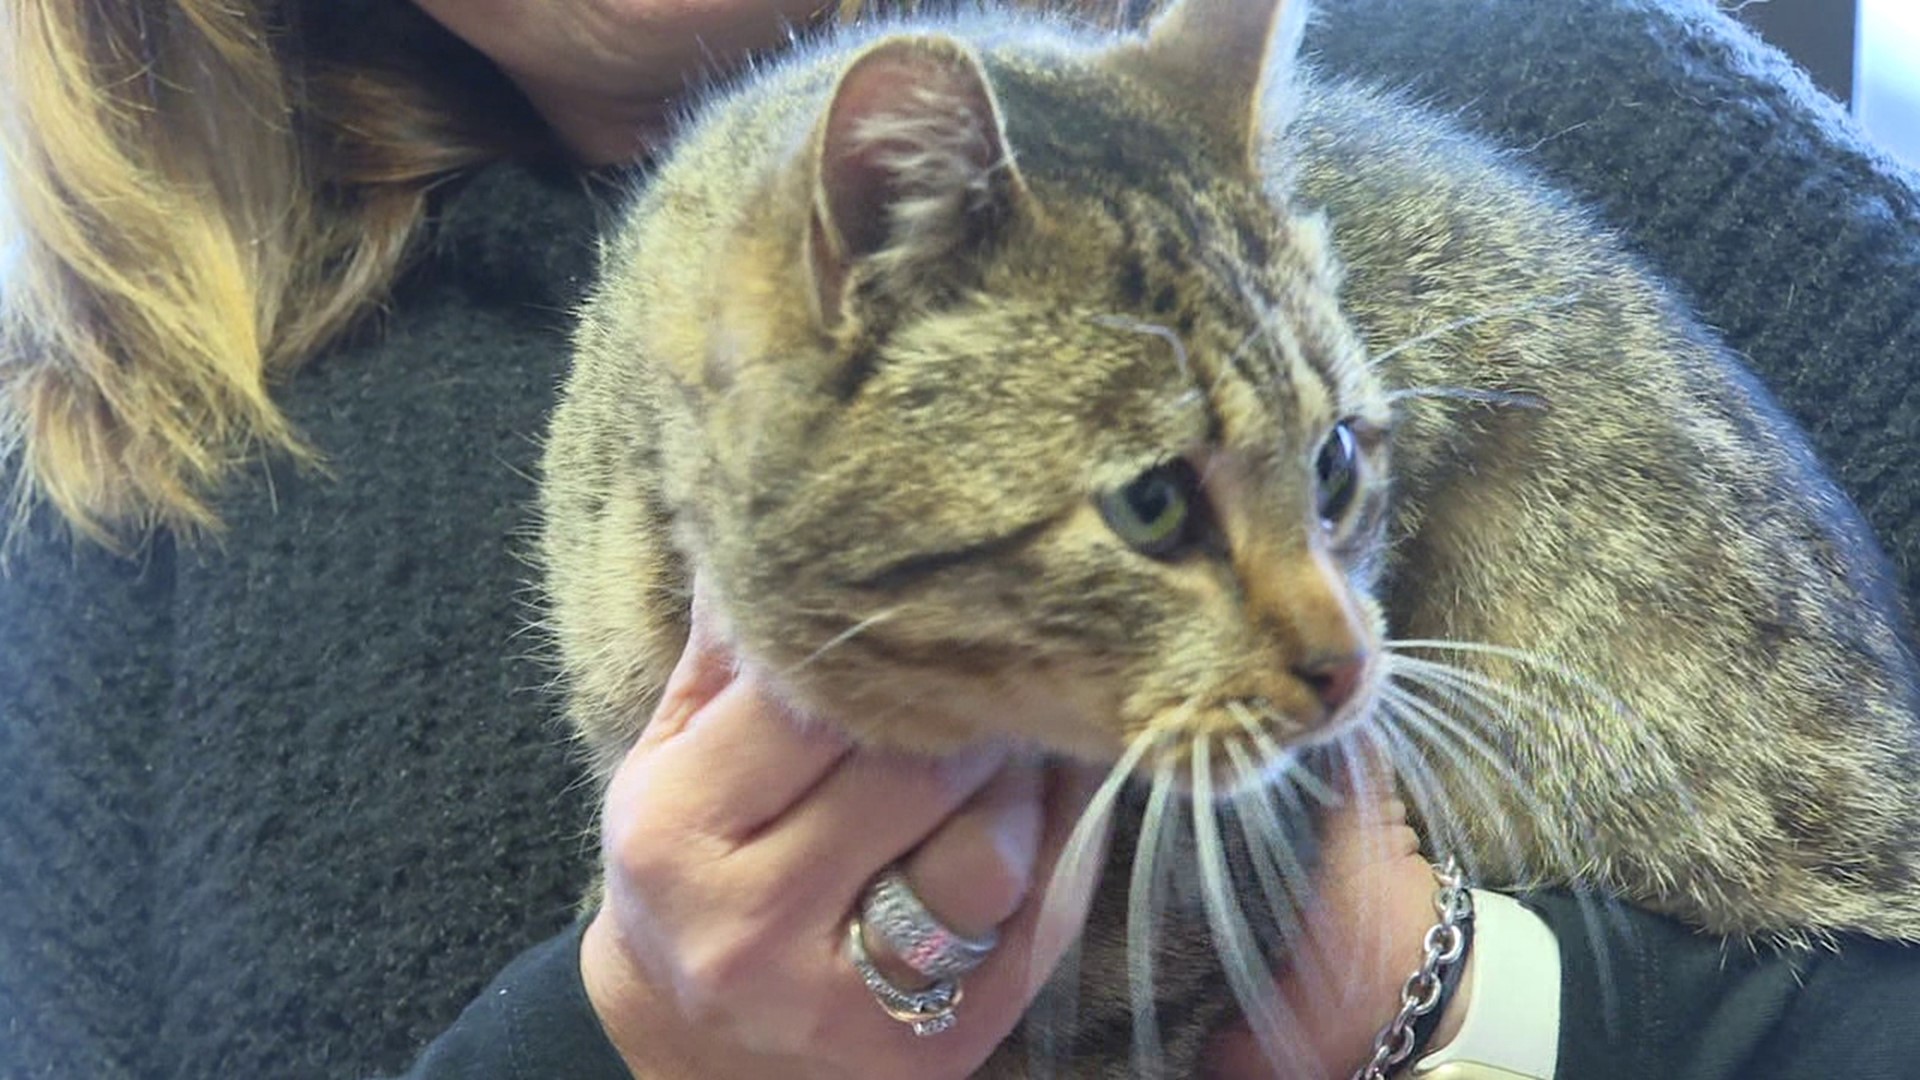 Newswatch 16's Courtney Harrison spoke with the mechanic who found the friendly feline.